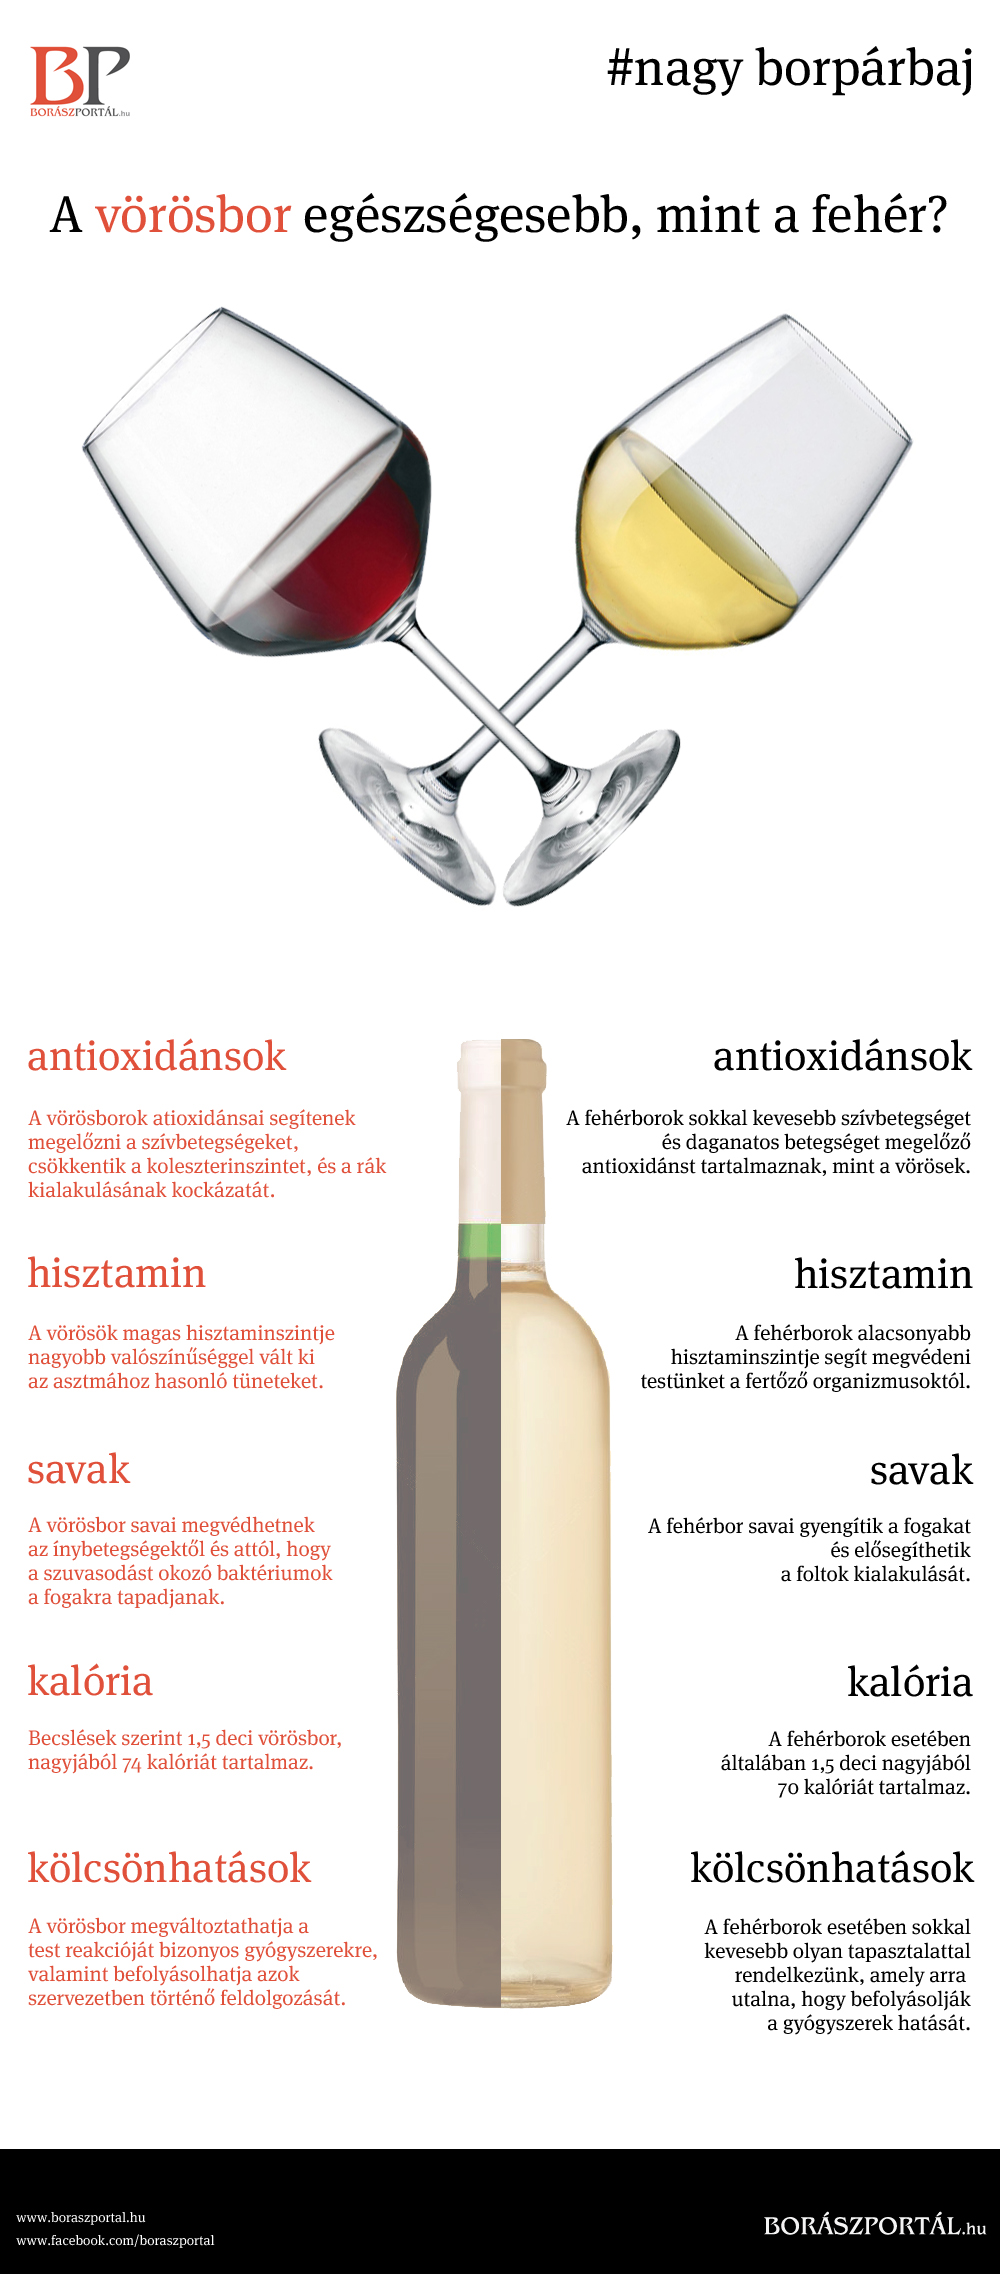 A fehér-, vagy a vörösbor egészségesebb?